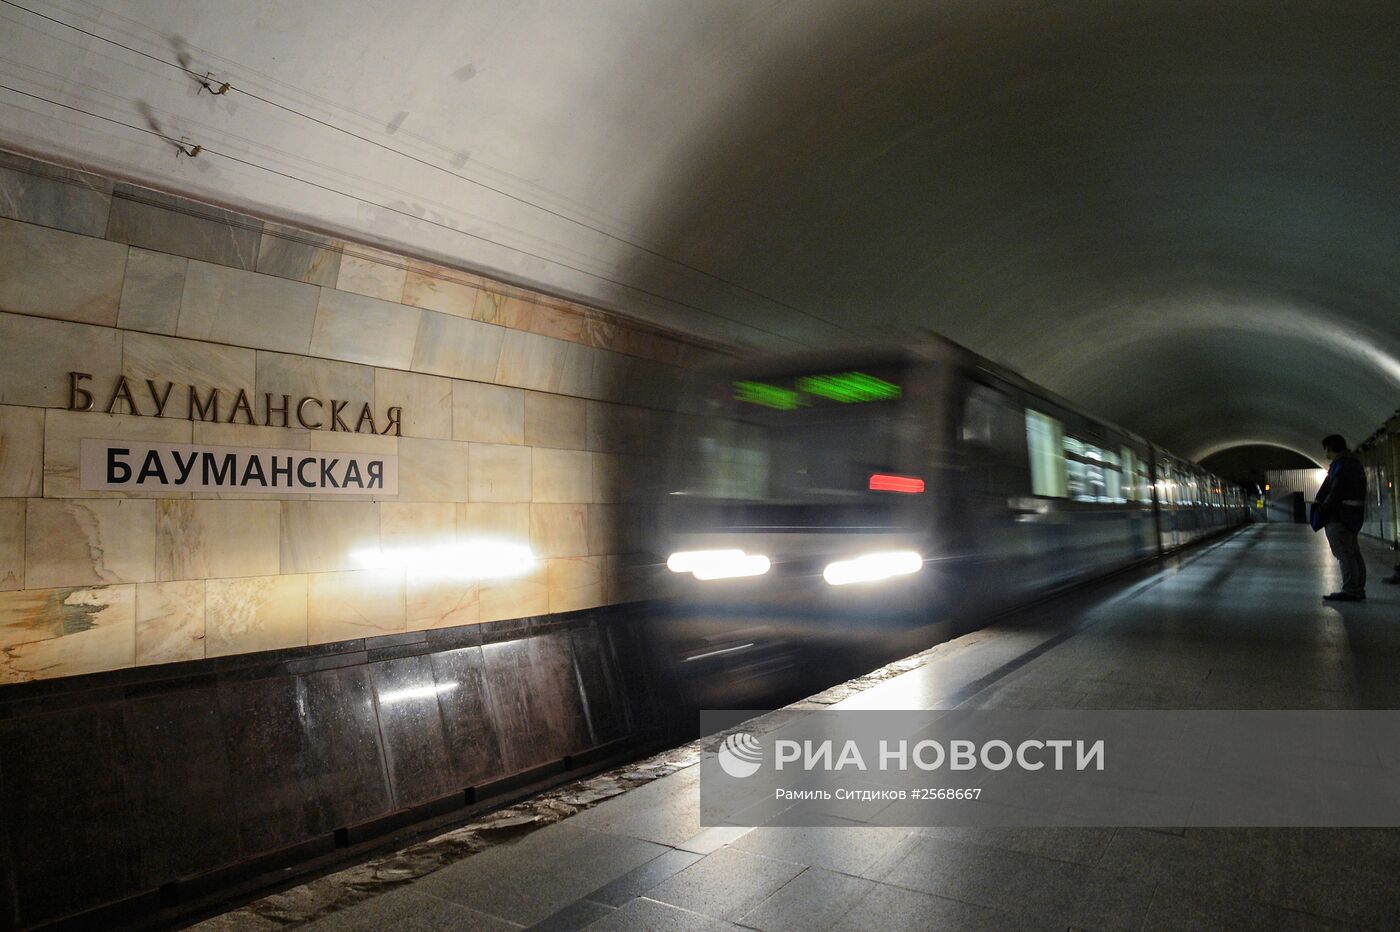 Станция метро "Бауманская" закрыта на реконструкцию